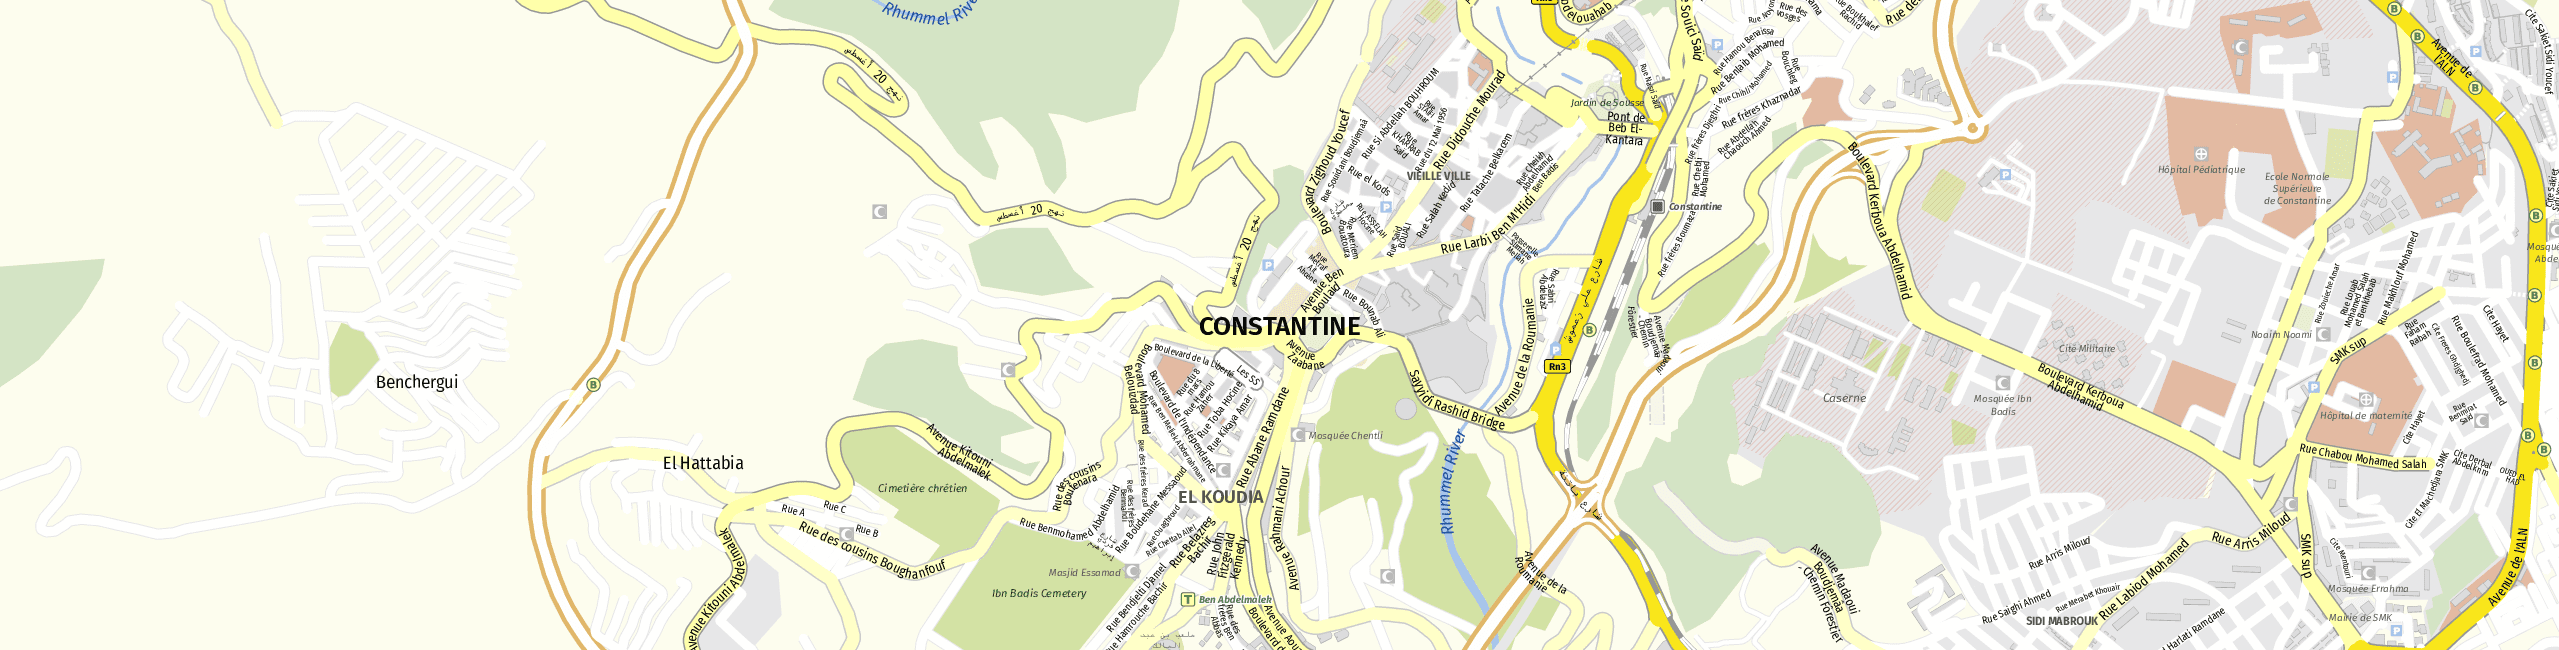 Stadtplan Constantine zum Downloaden.